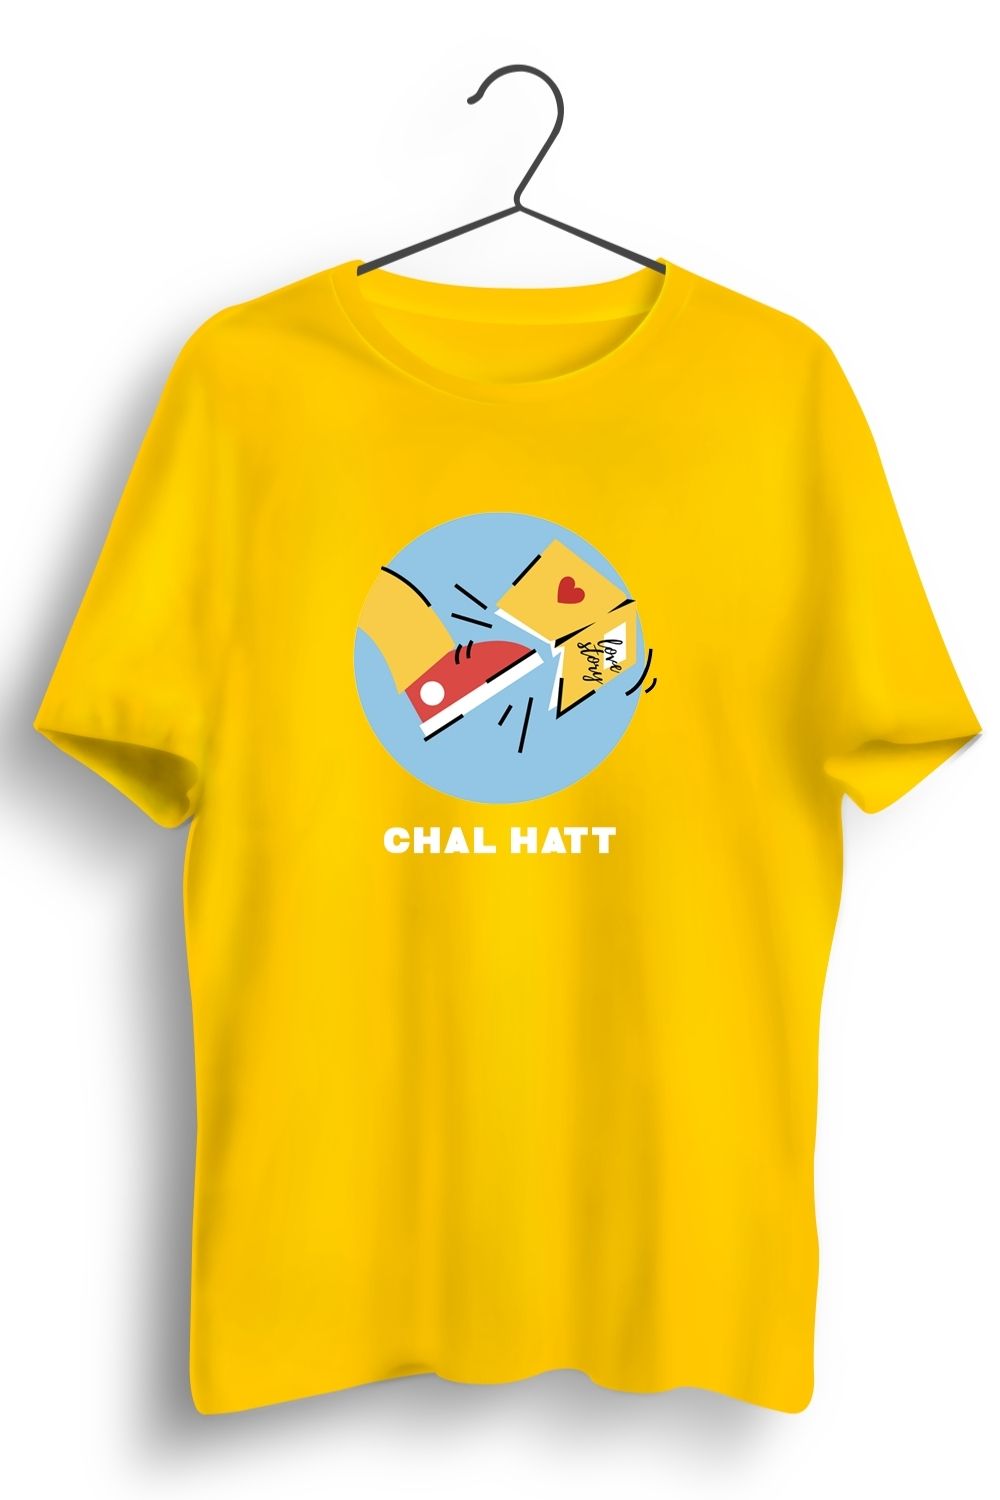 Chal Hatt Graphic Printed Yellow Tshirt